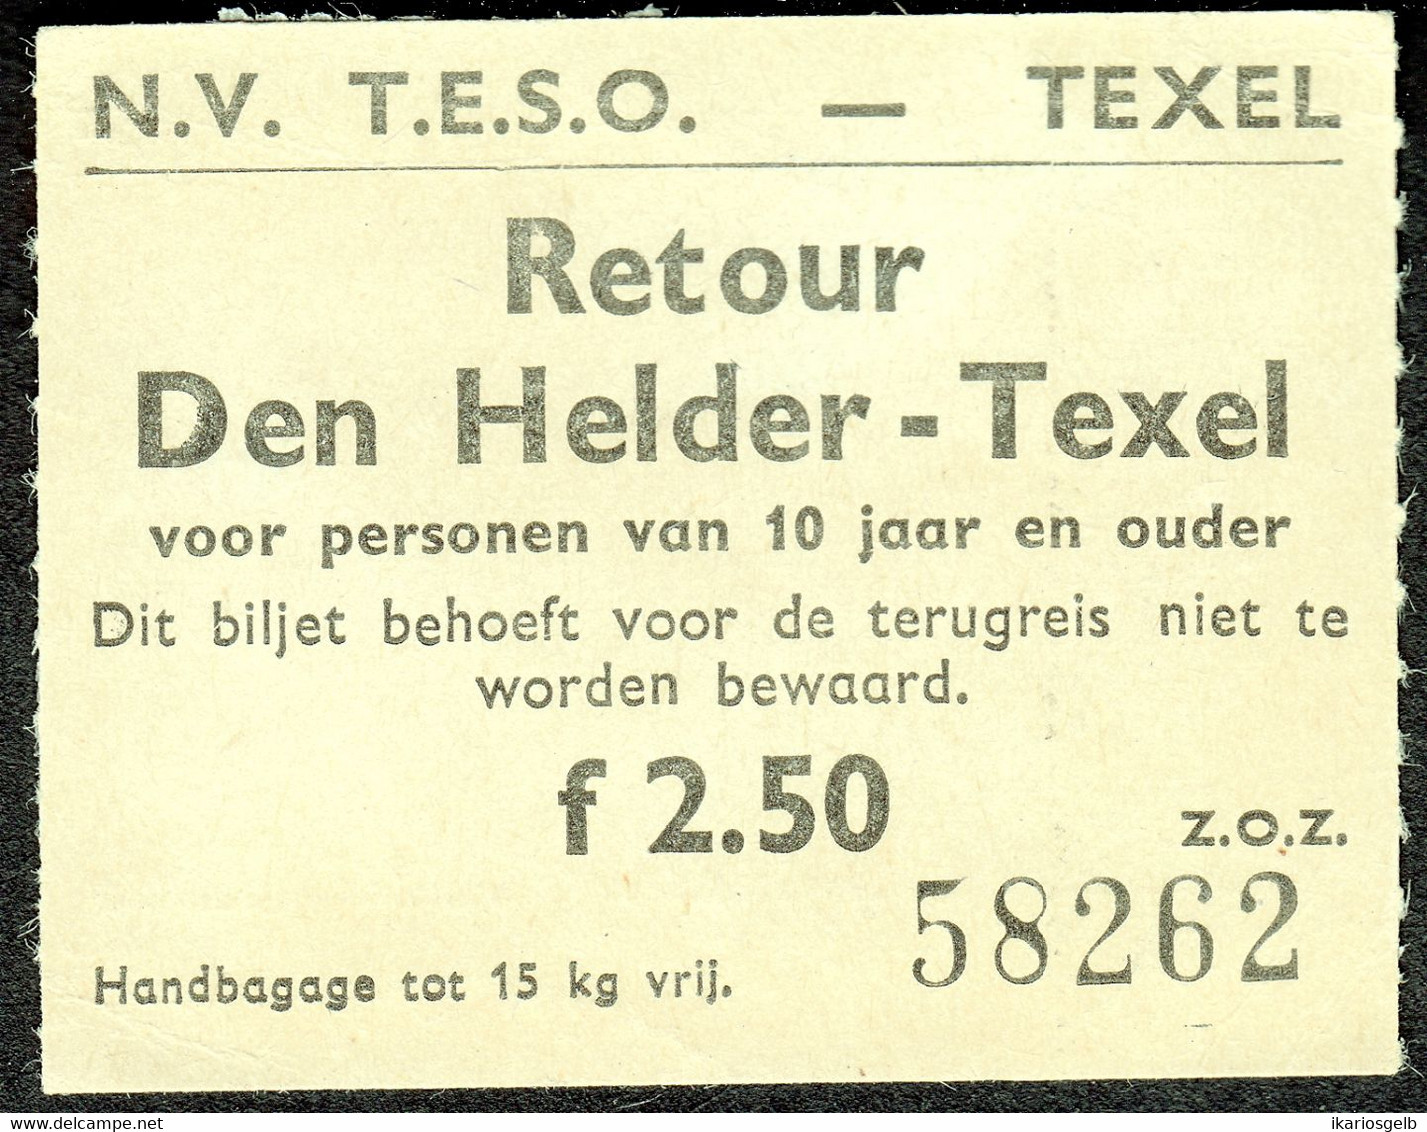 Nederlande 1983 Den Helder - Texel Schiff Ship Boat Fahrschein Boleto Biglietto Ticket Billet - Europa